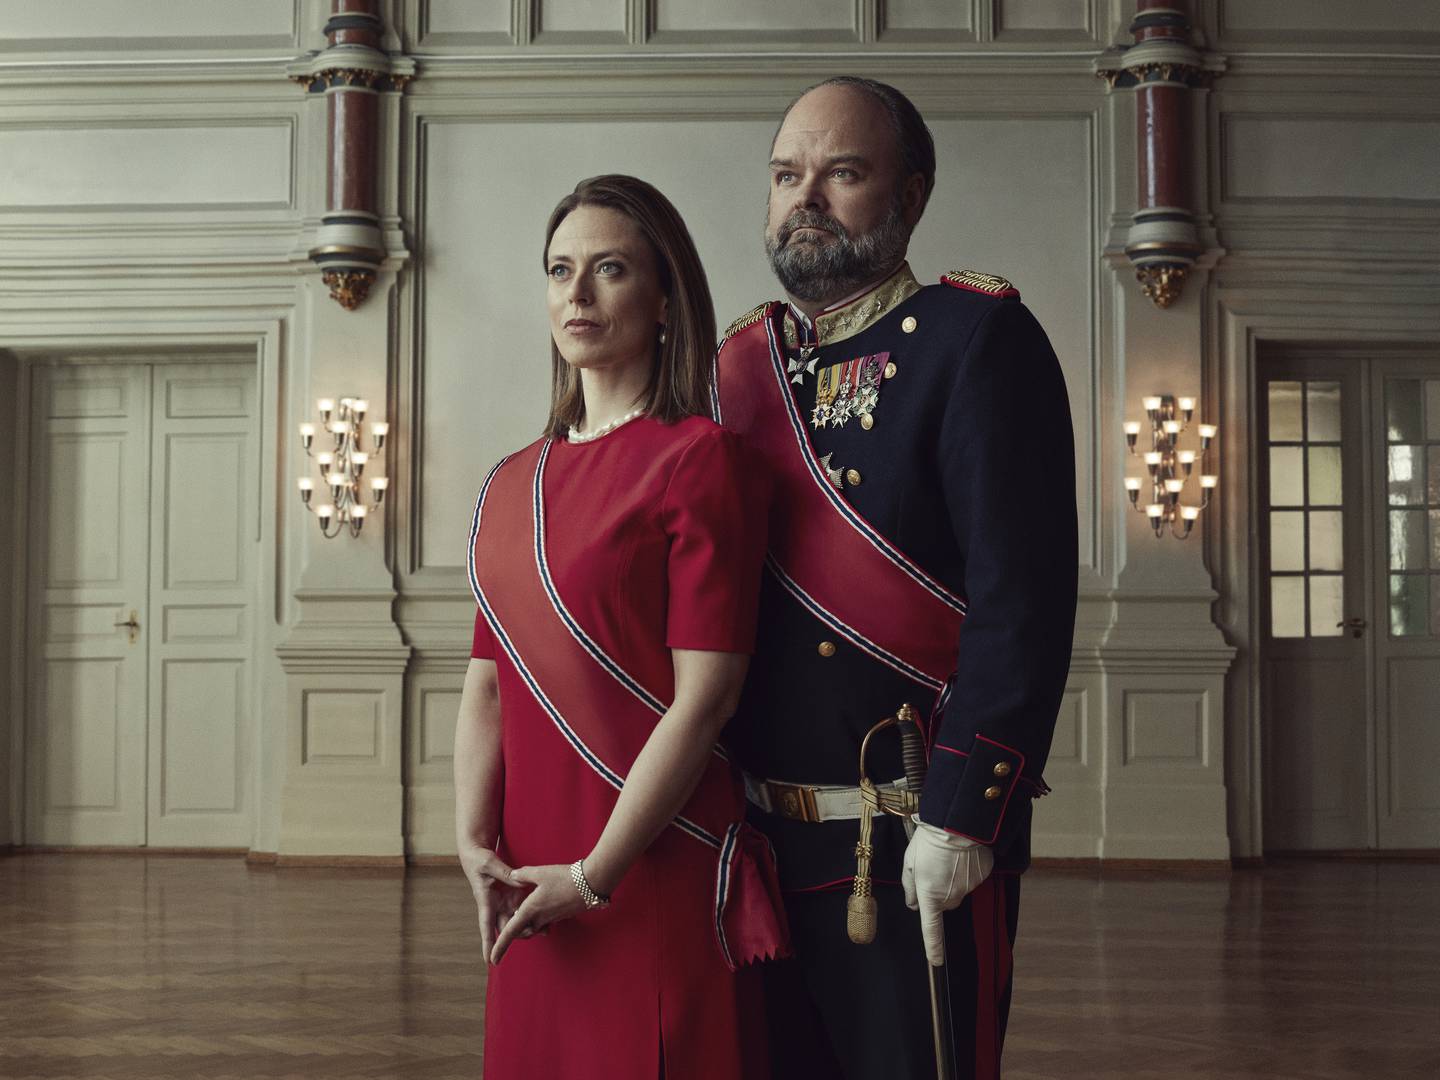 Dramakomedien «Kjære landsmenn» kommer på TV 2 høsten 2021. Atle Antonsen og Ine Jansen spiller hovedrollene som kong Johan og dronning Isabella. Foto: TV 2